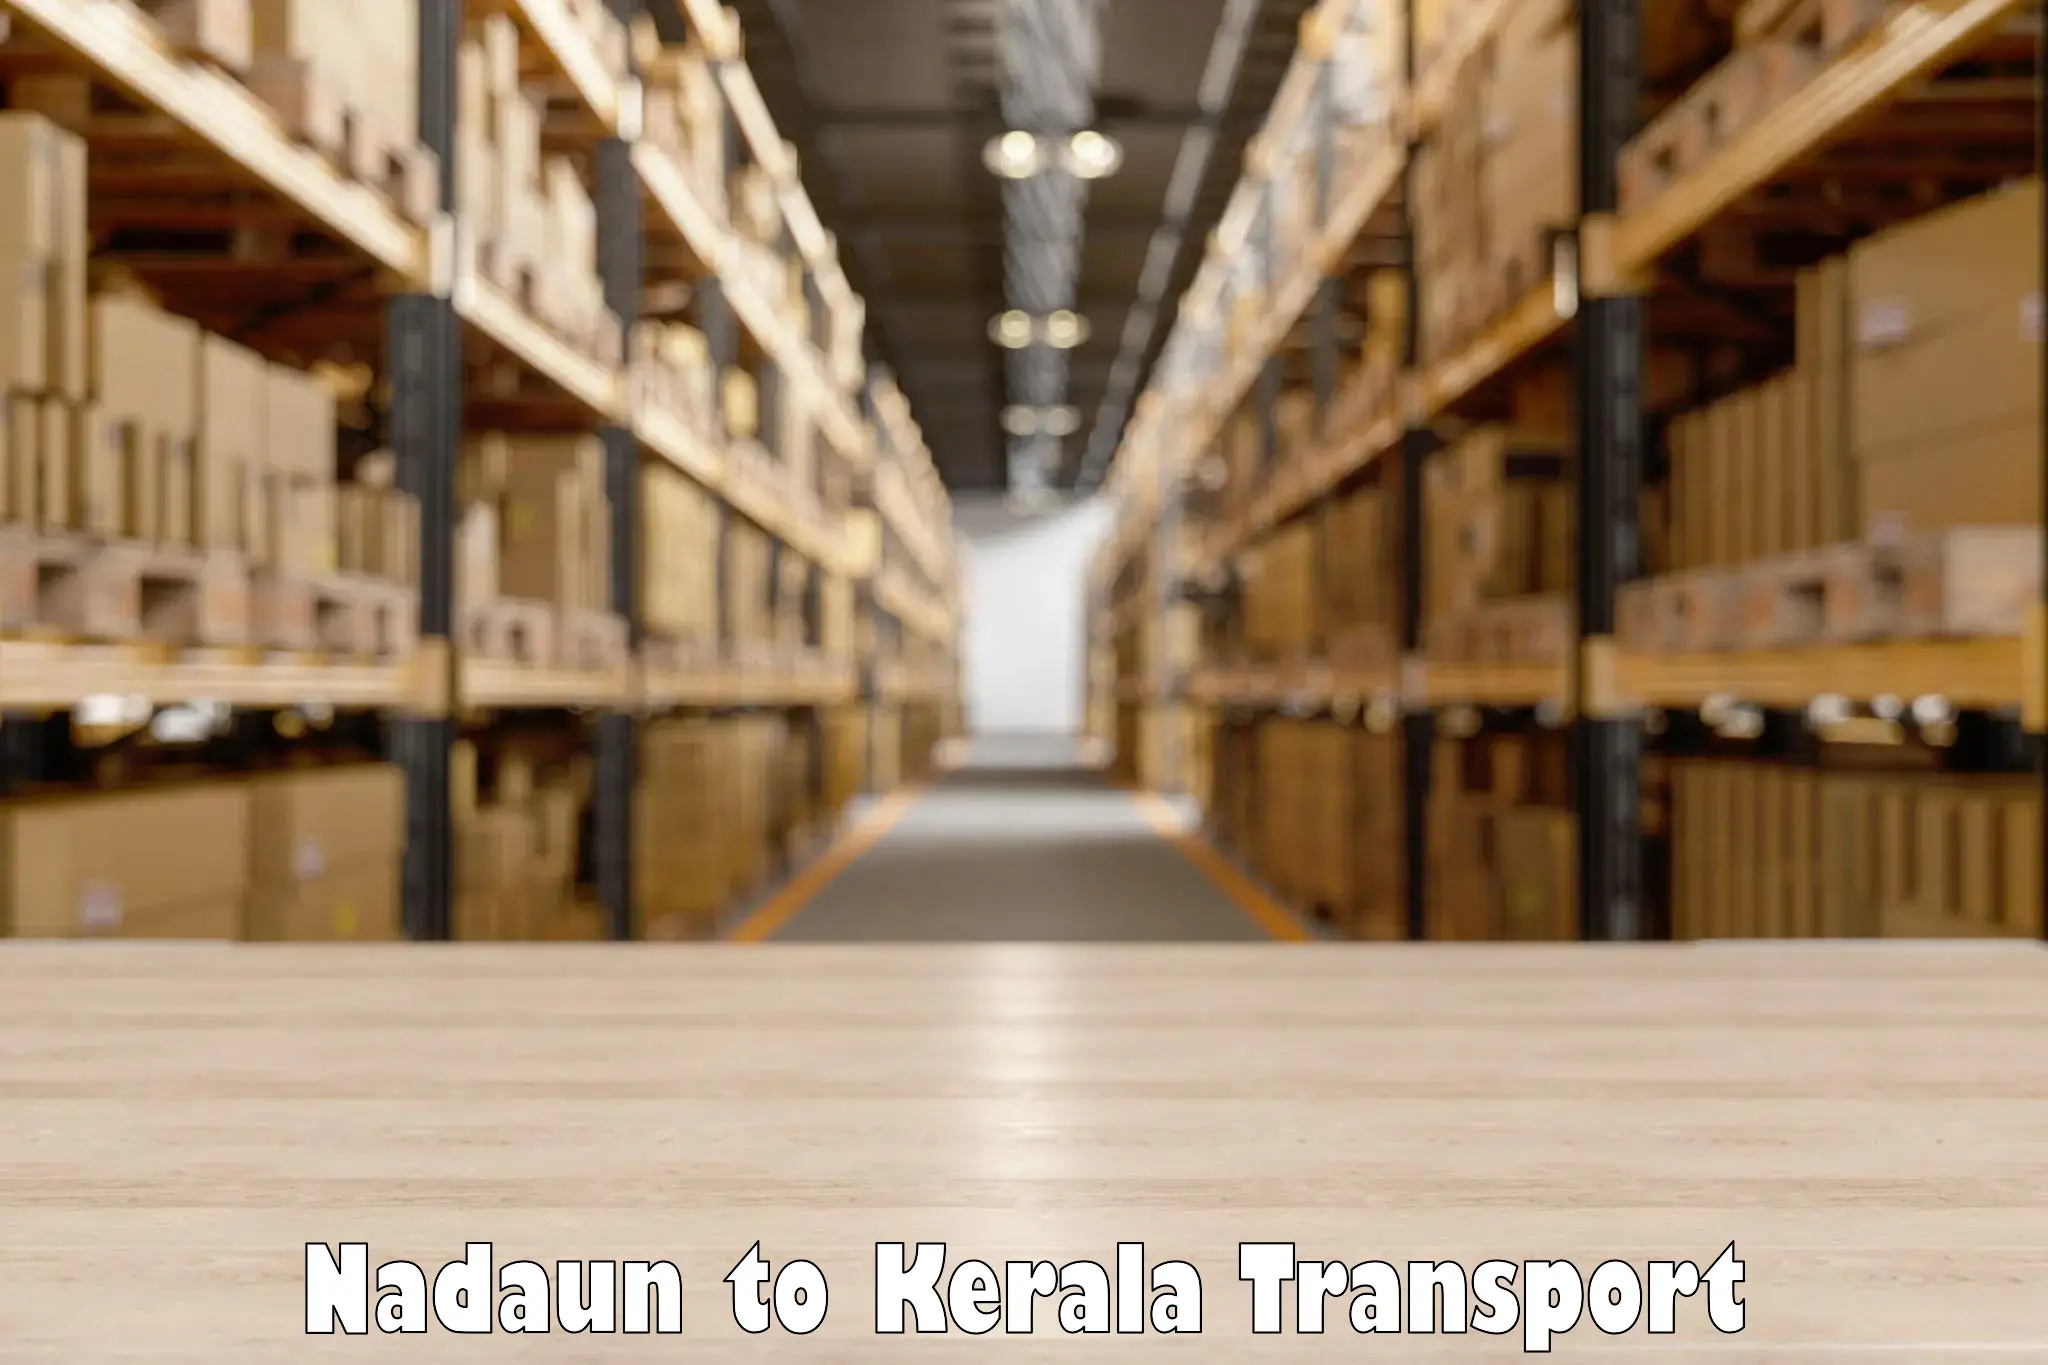 Transport in sharing Nadaun to Kerala